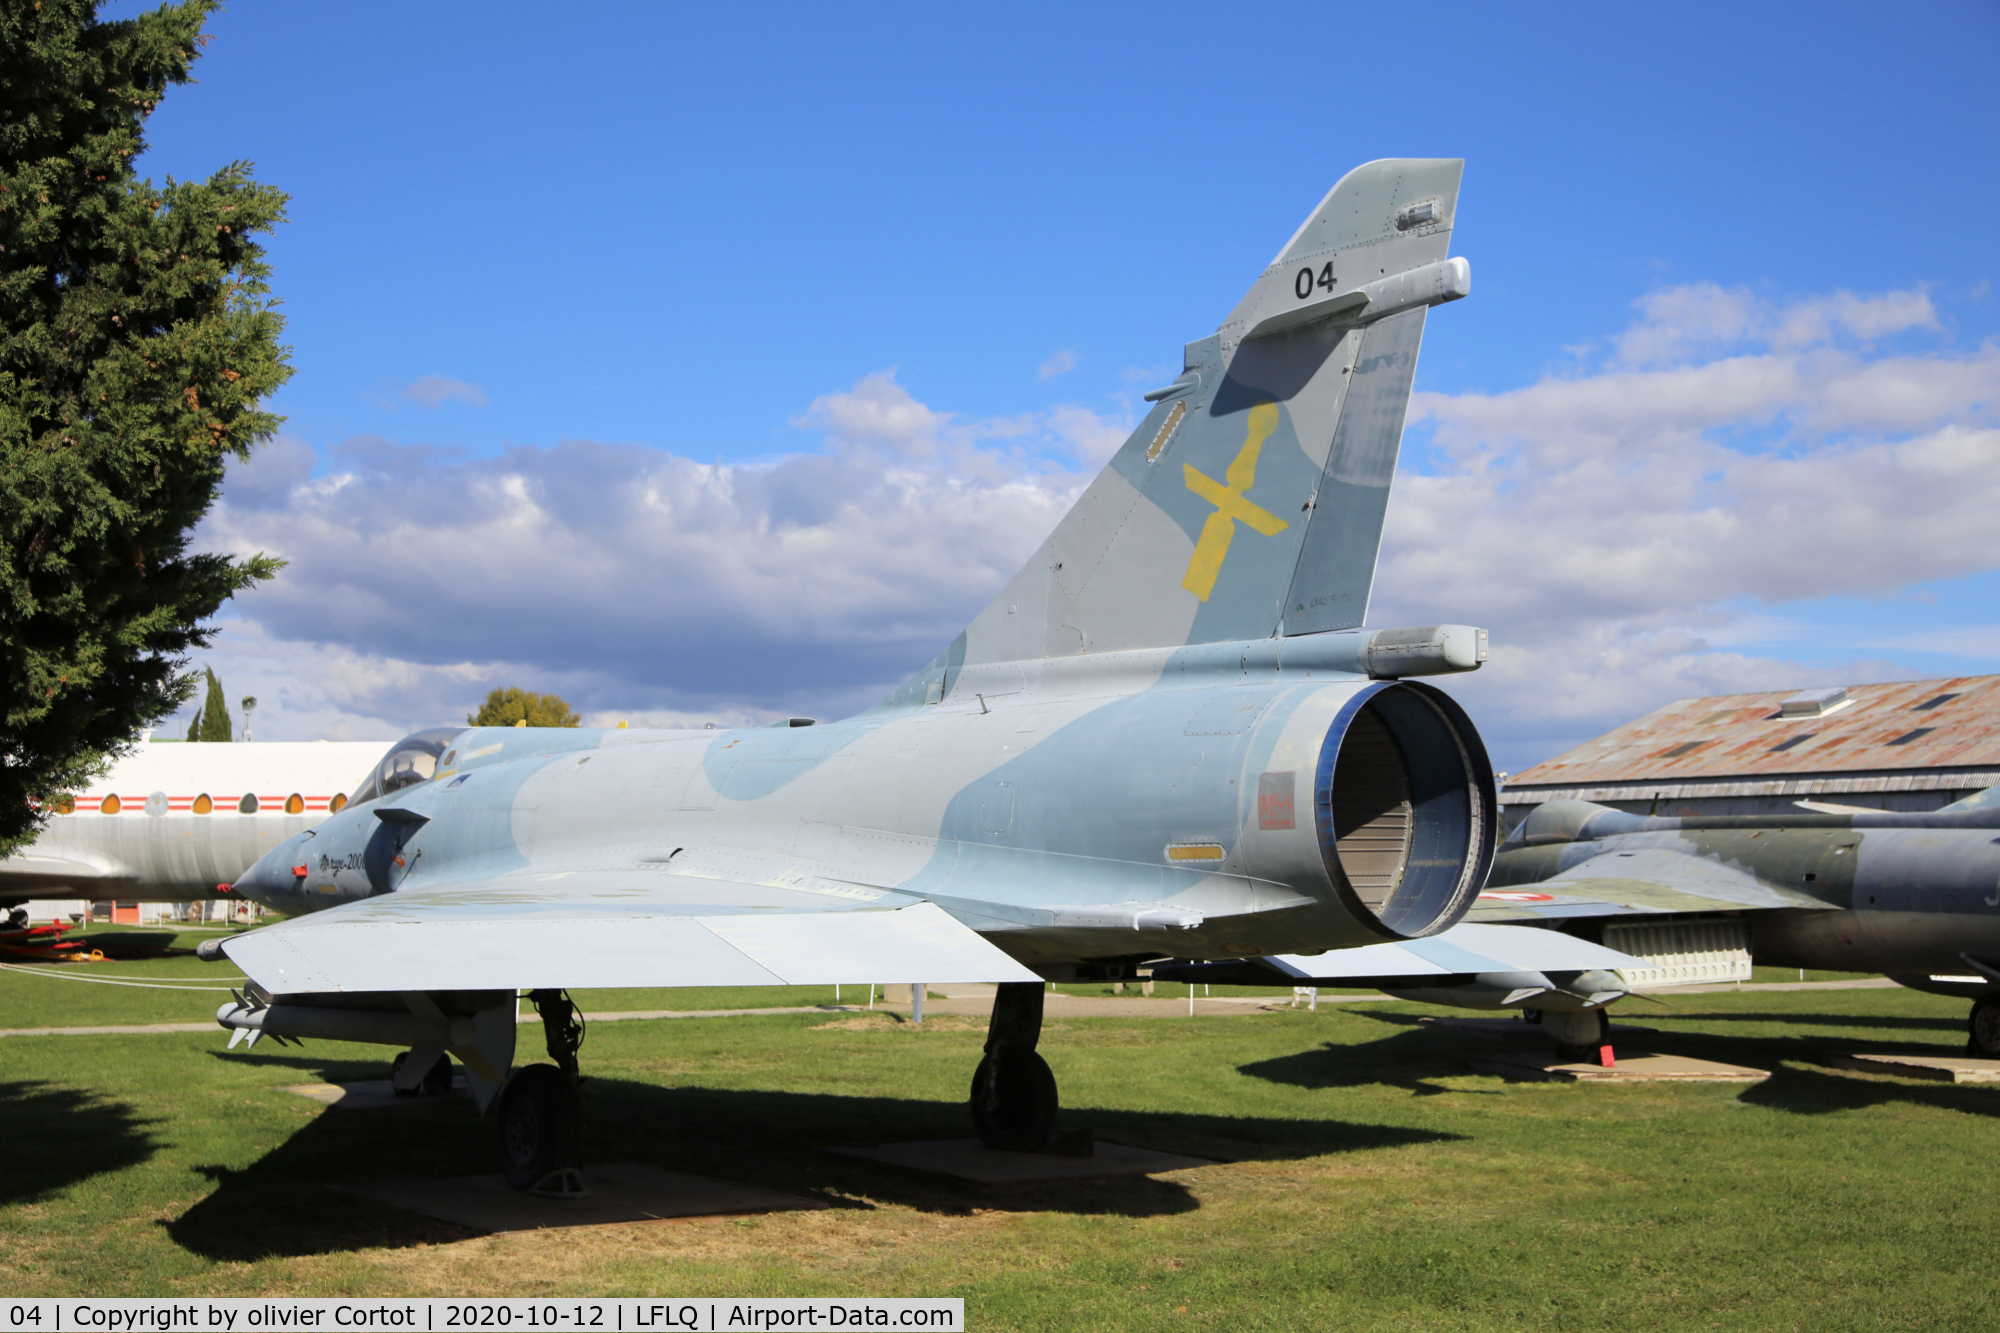 04, Dassault Mirage 2000 C/N 04, oct 2020